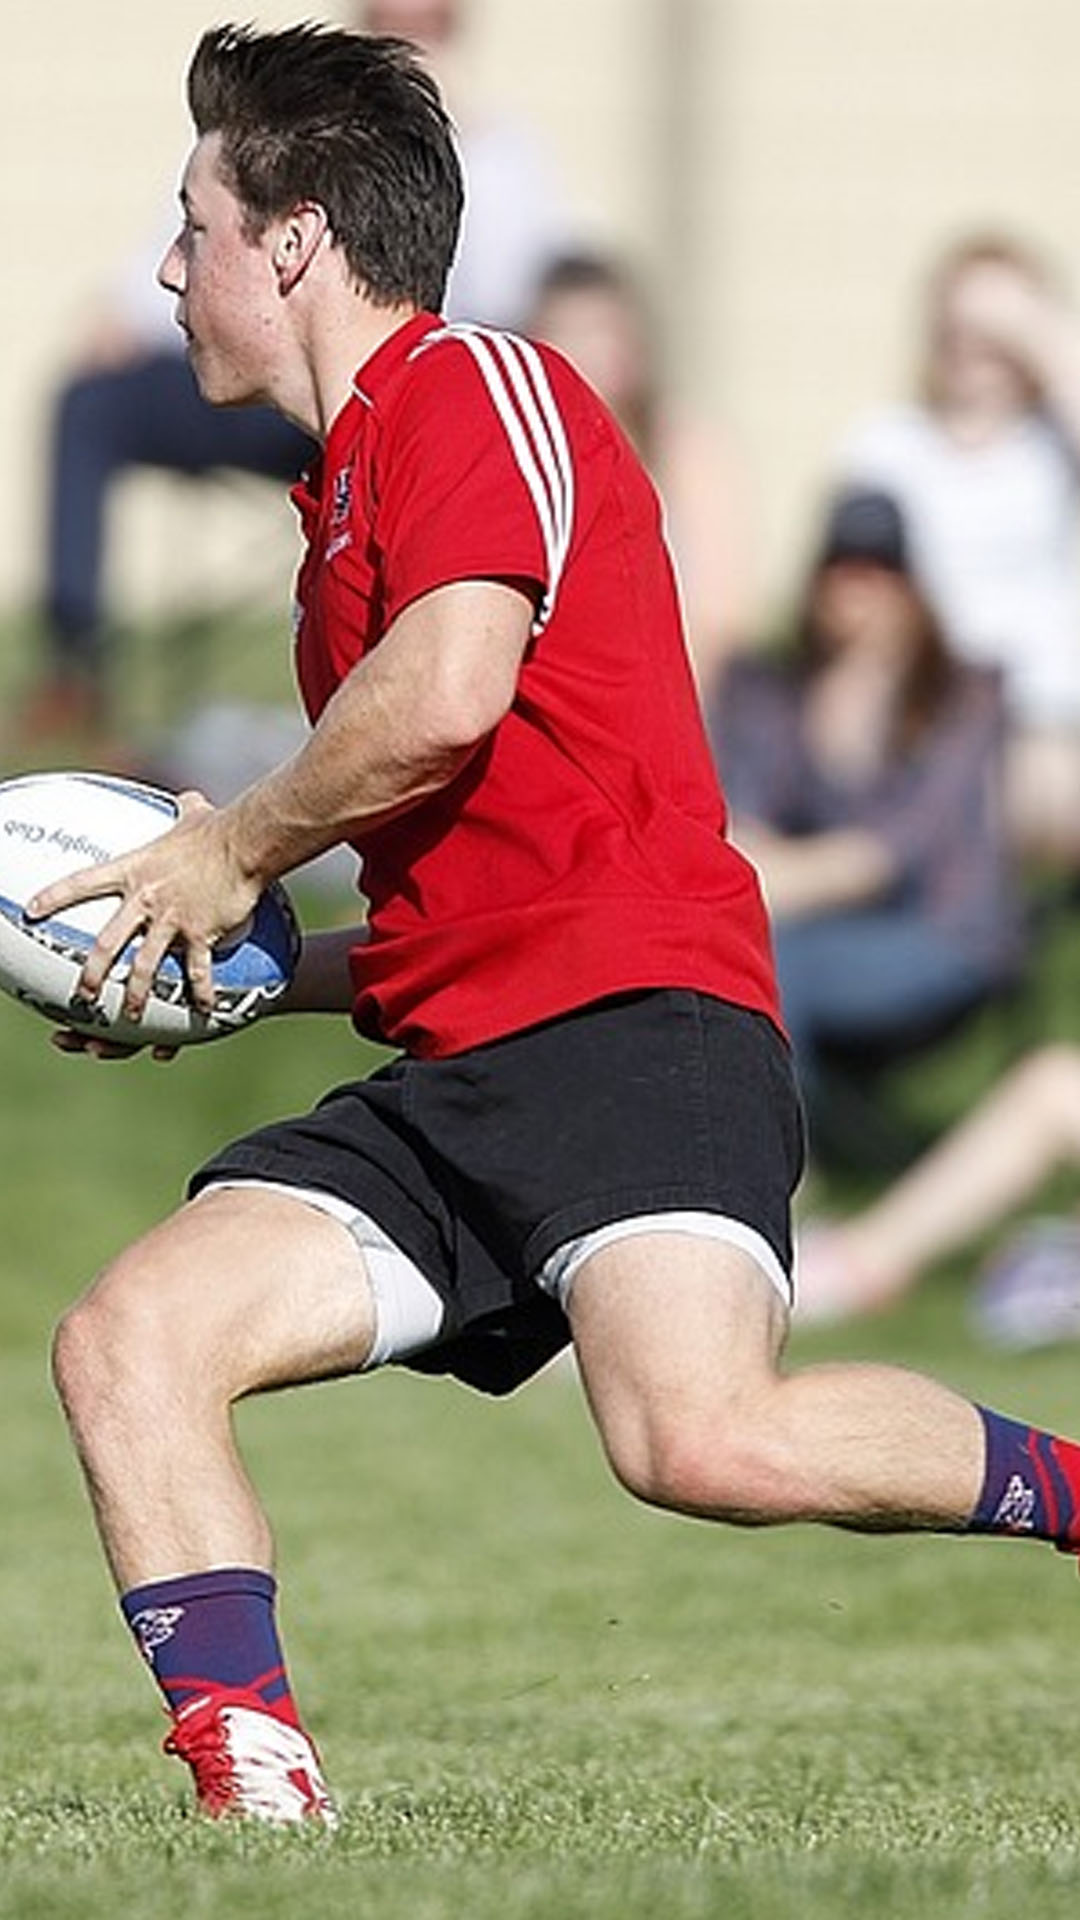 Homme qui joue au rugby et court avec un ballon dans les mains